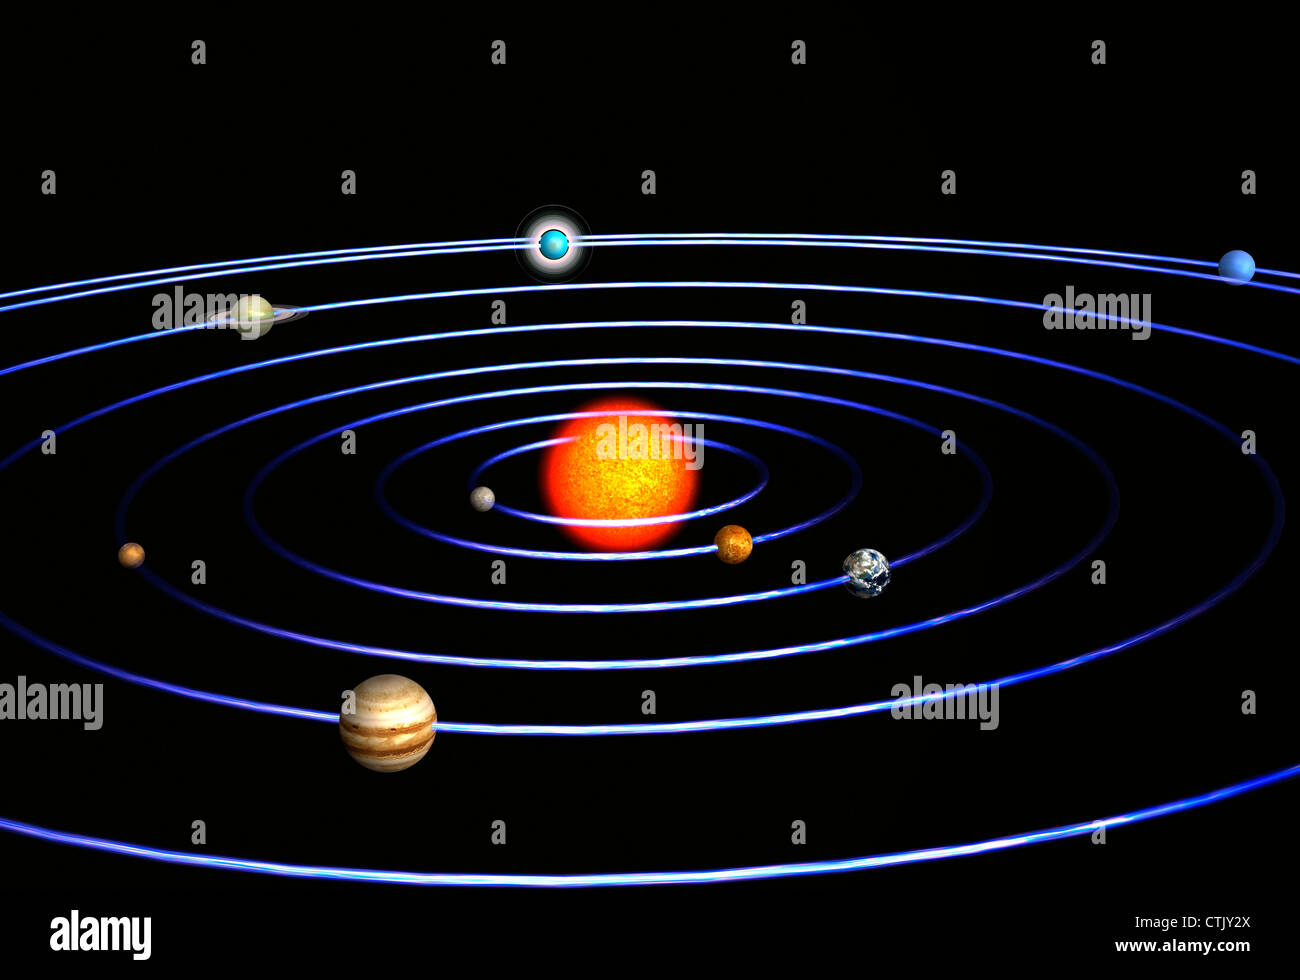 Sistema solare con il sole al centro e i pianeti Mercurio, Venere, Terra e Marte, Giove, Saturno, Urano, Nettuno (simbolico) Foto Stock